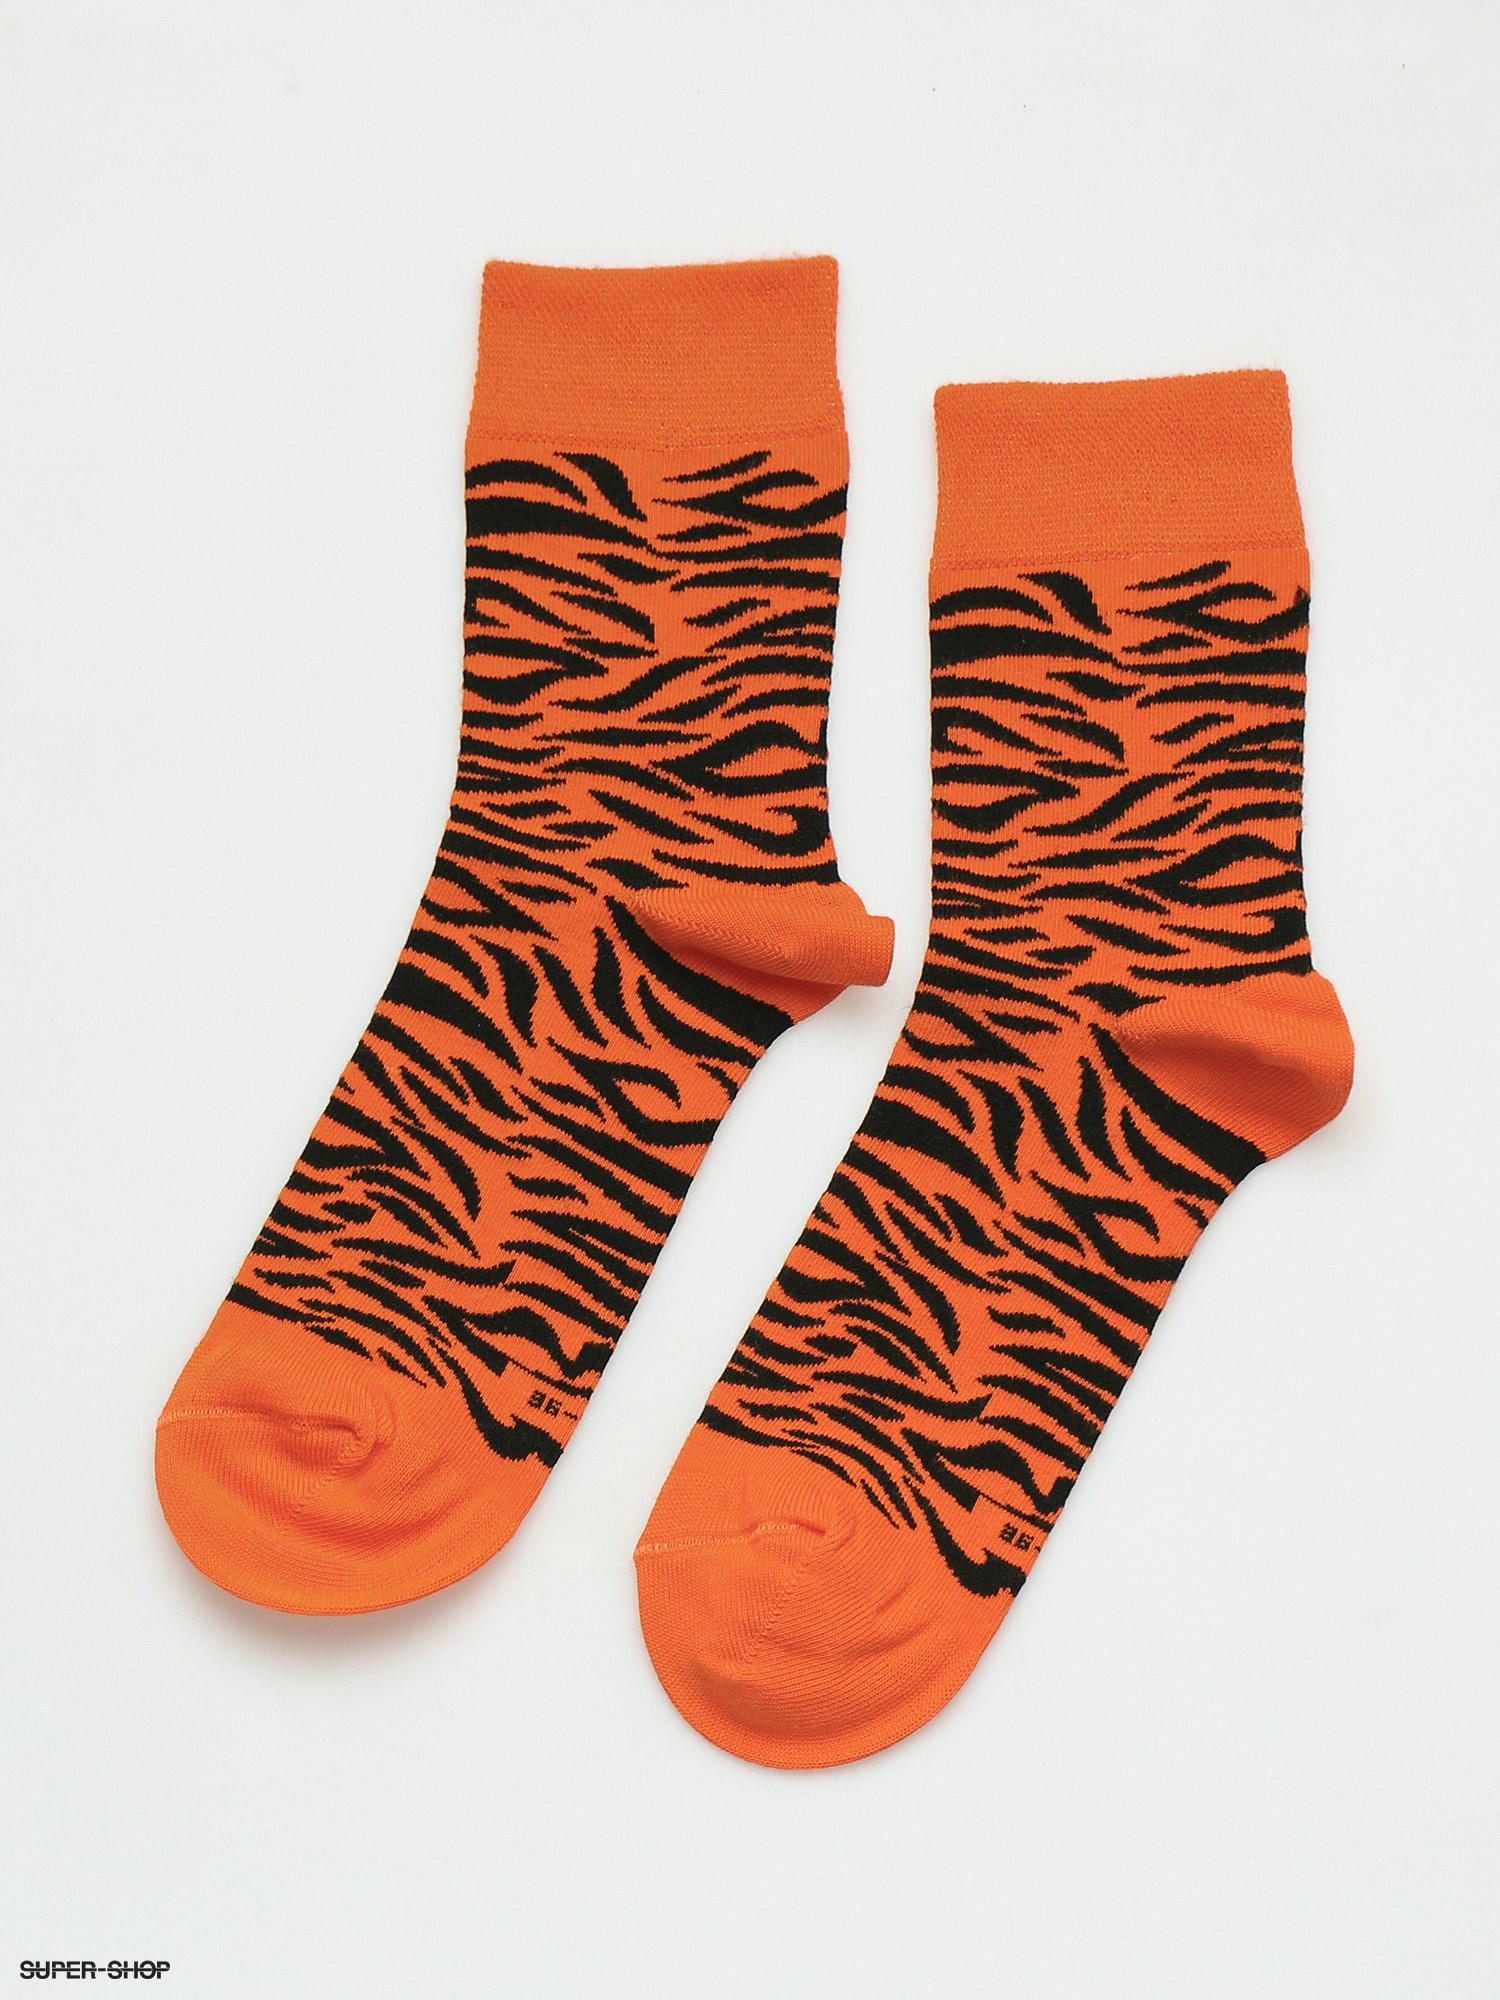 Nervous Tiger Socks (orange/black)